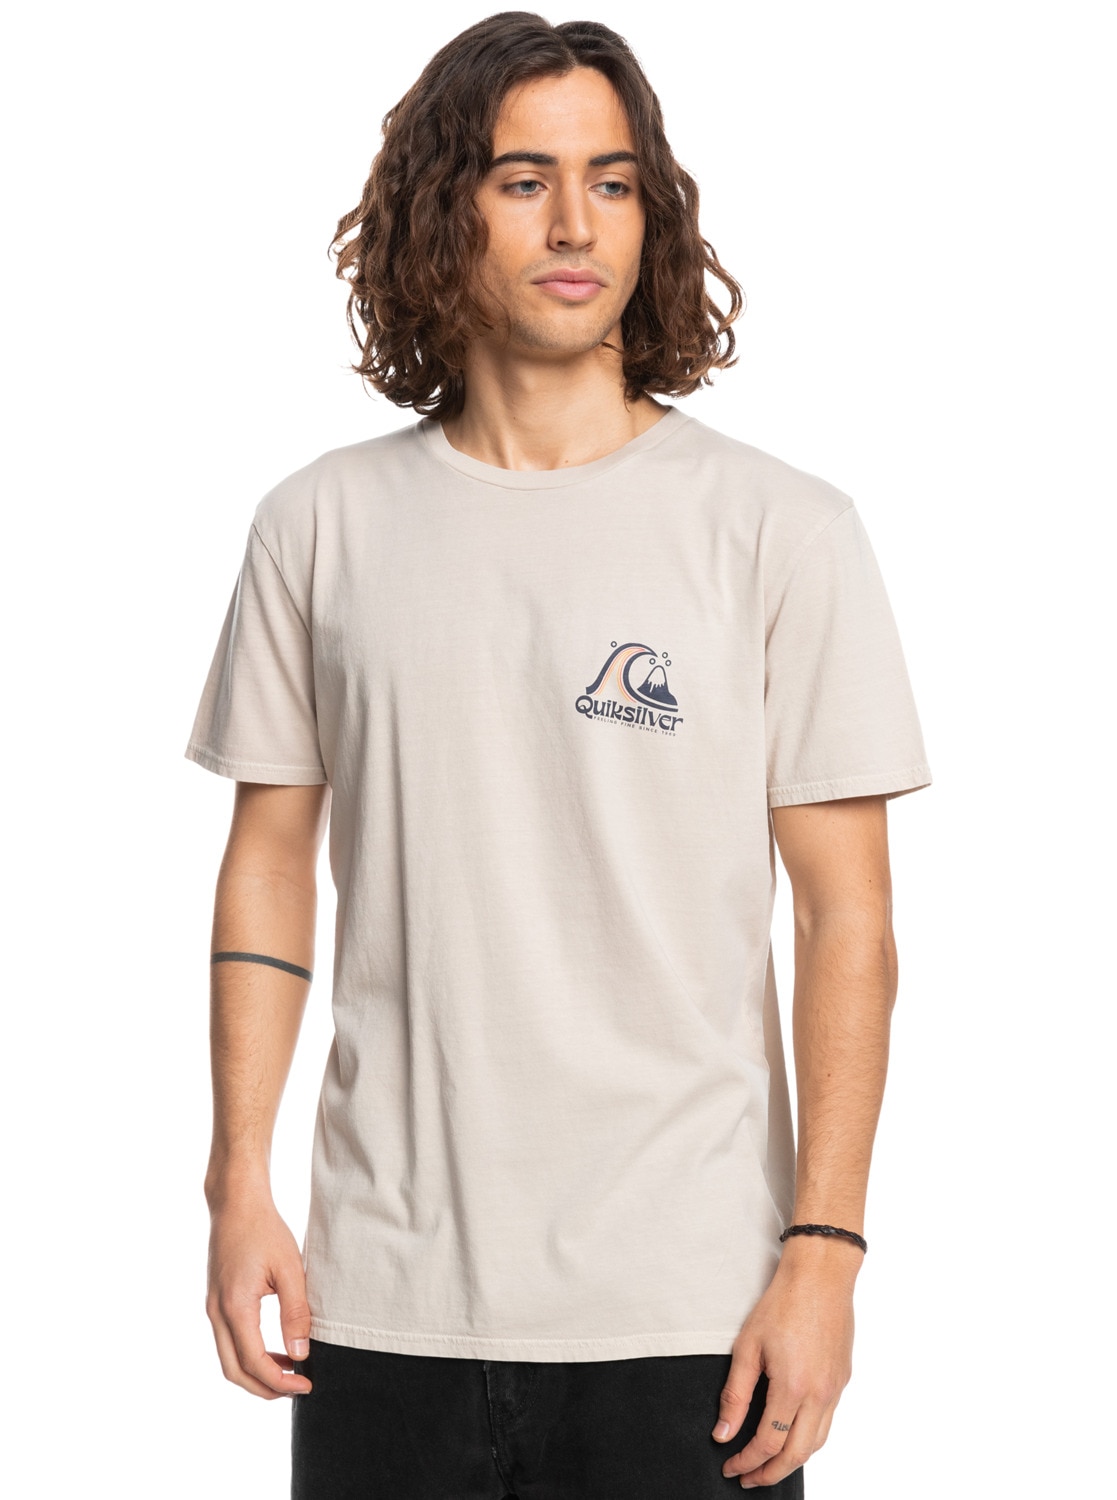 Quiksilver T-Shirt »Rolling Circle« von Quiksilver